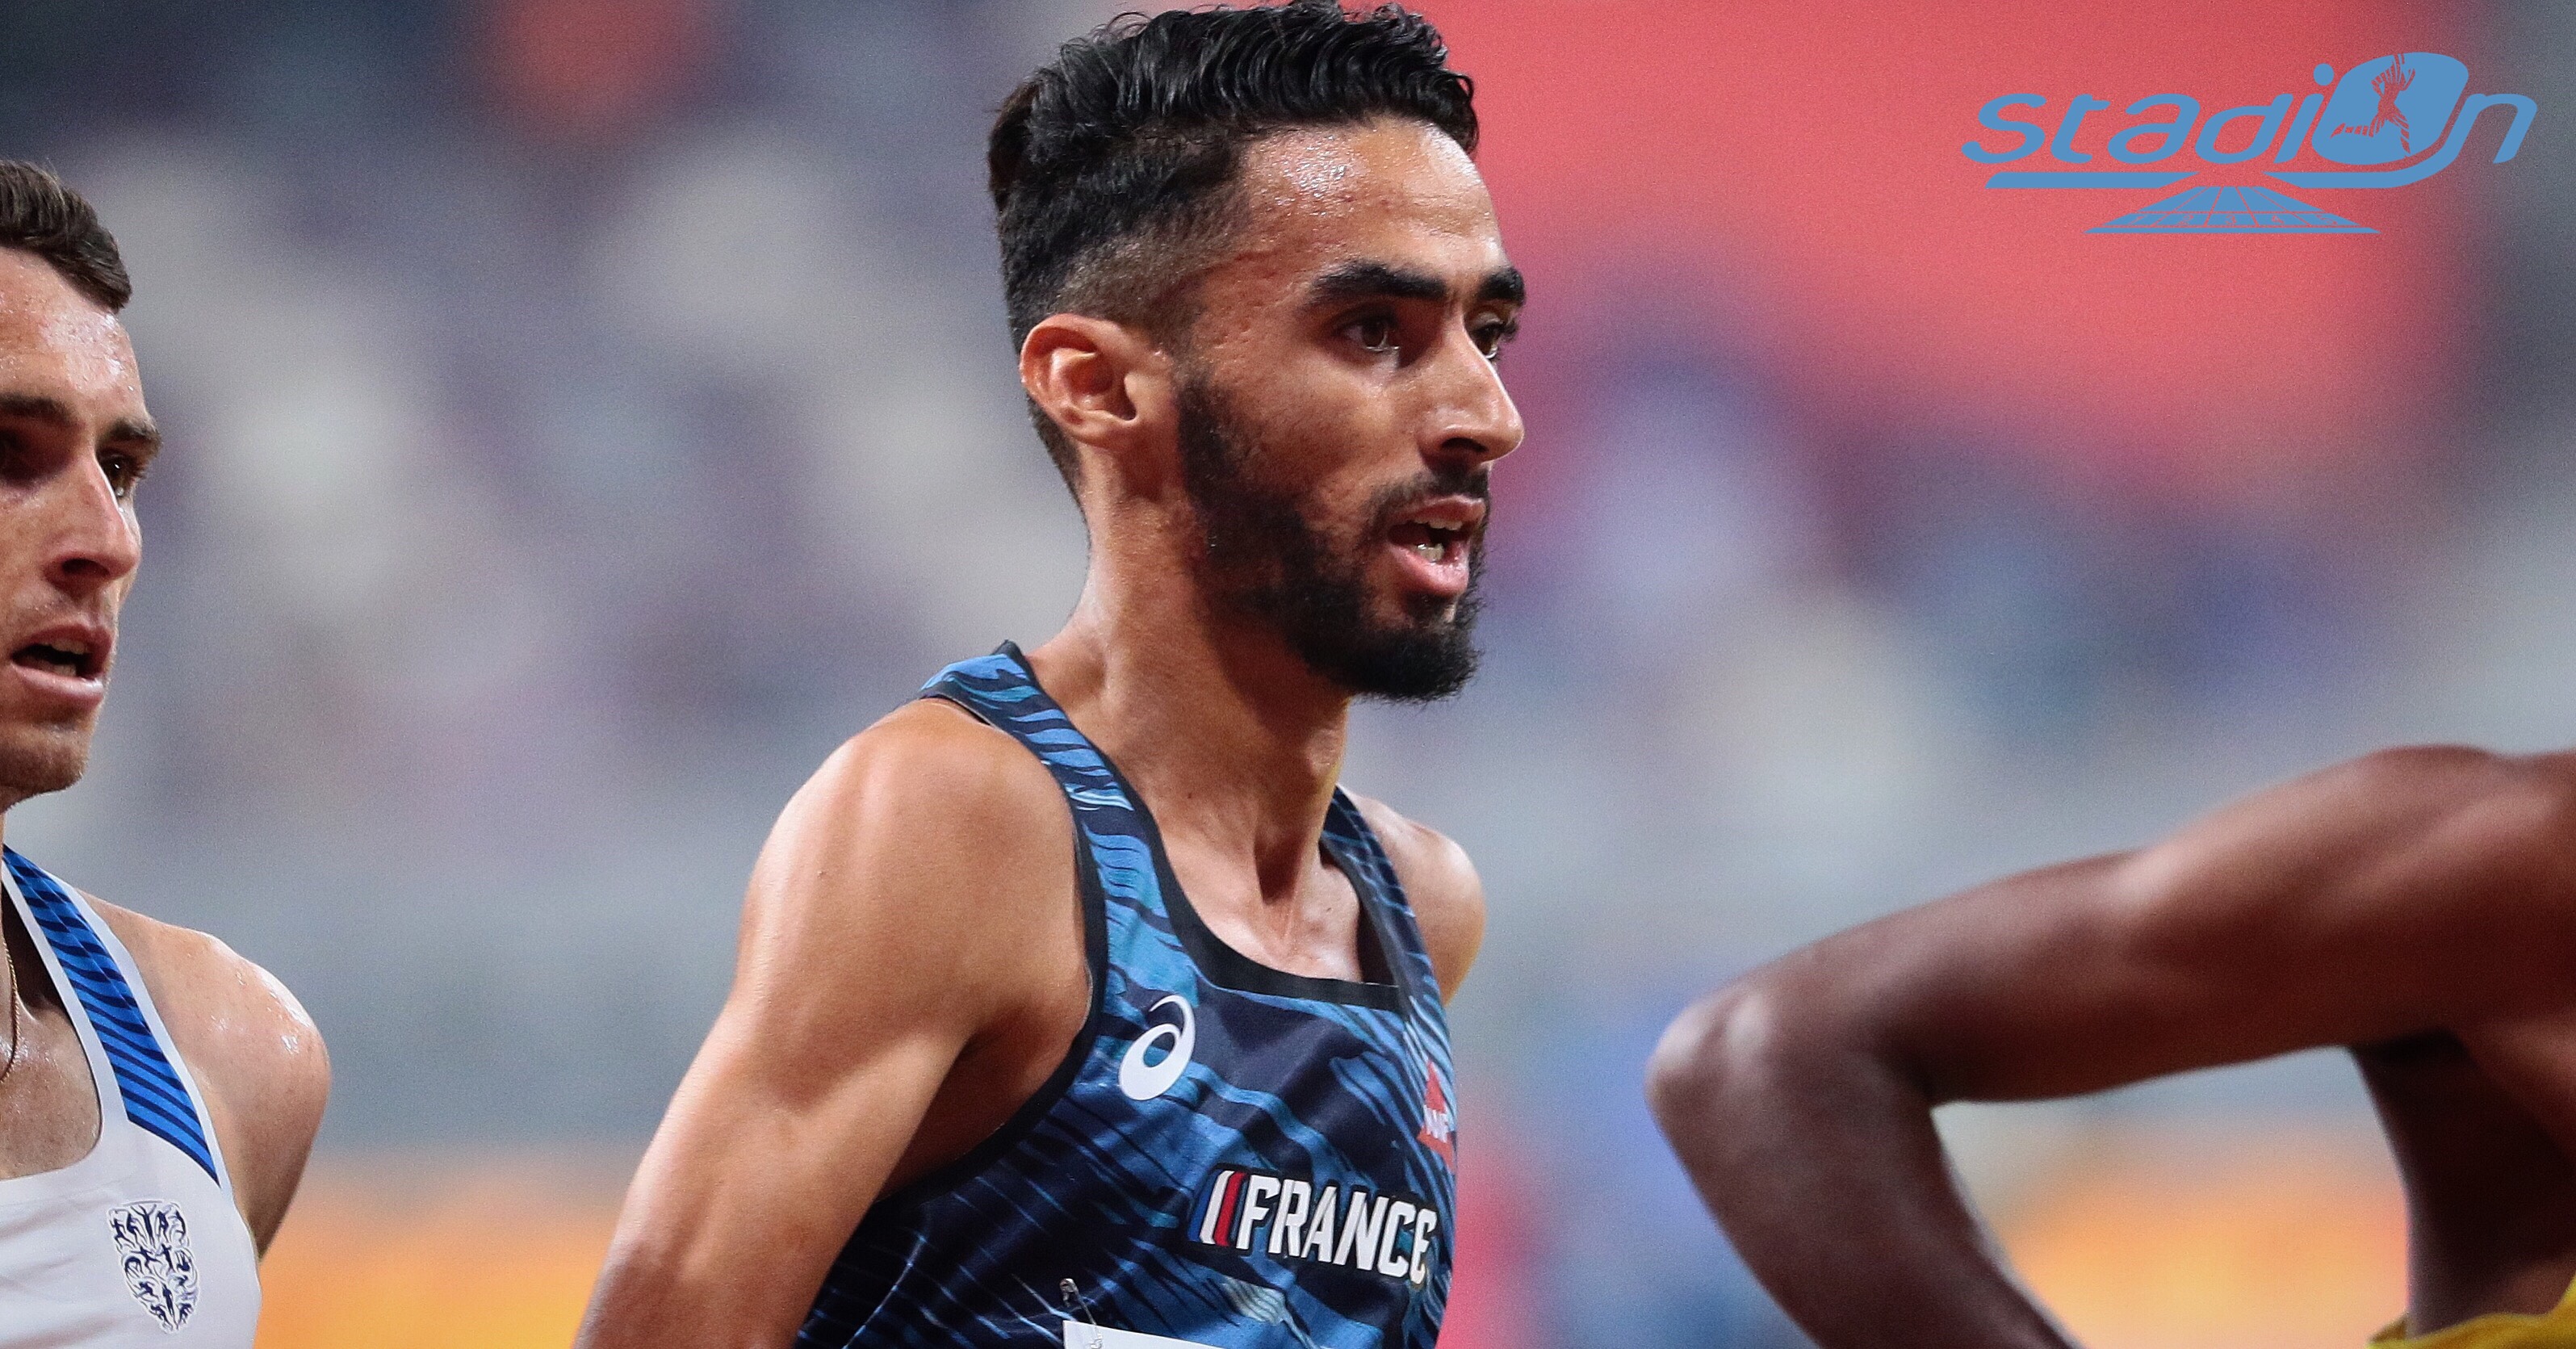 Championnats du Monde de Doha : Bedrani, une cinquième place qui vaut de l’or